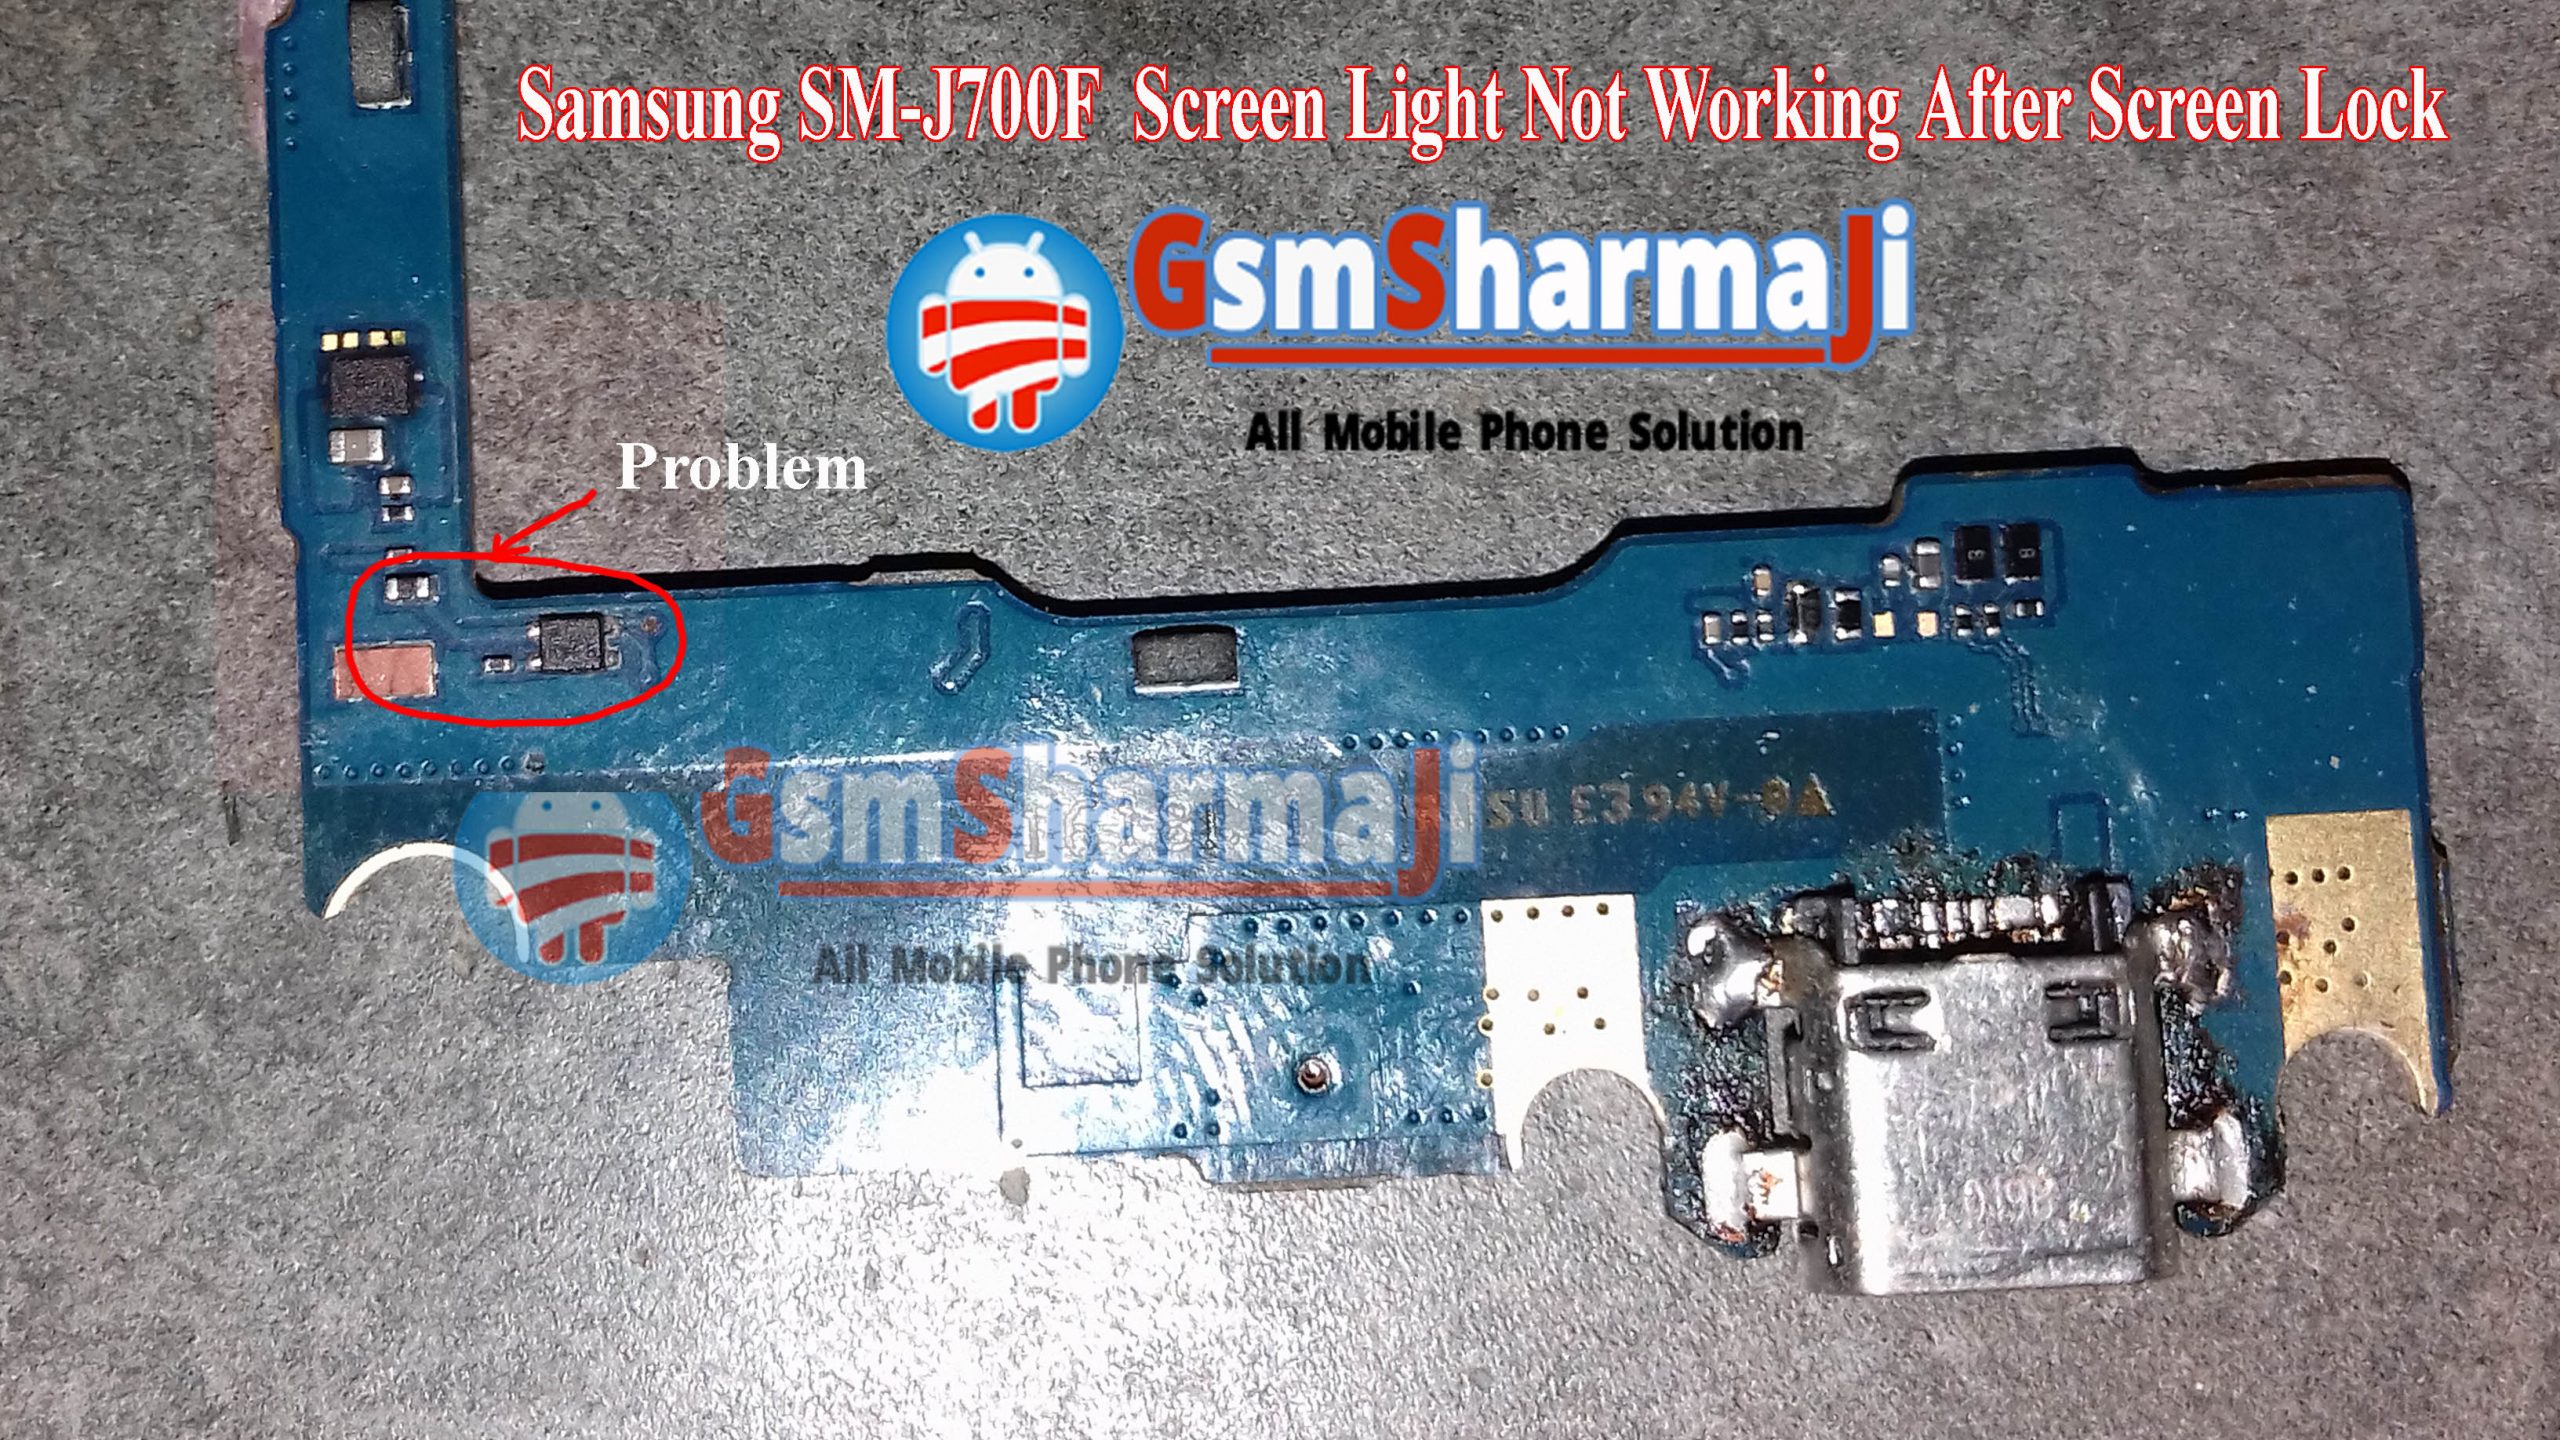 Samsung SM-J700F Screen Light Not Working After Screen Lock